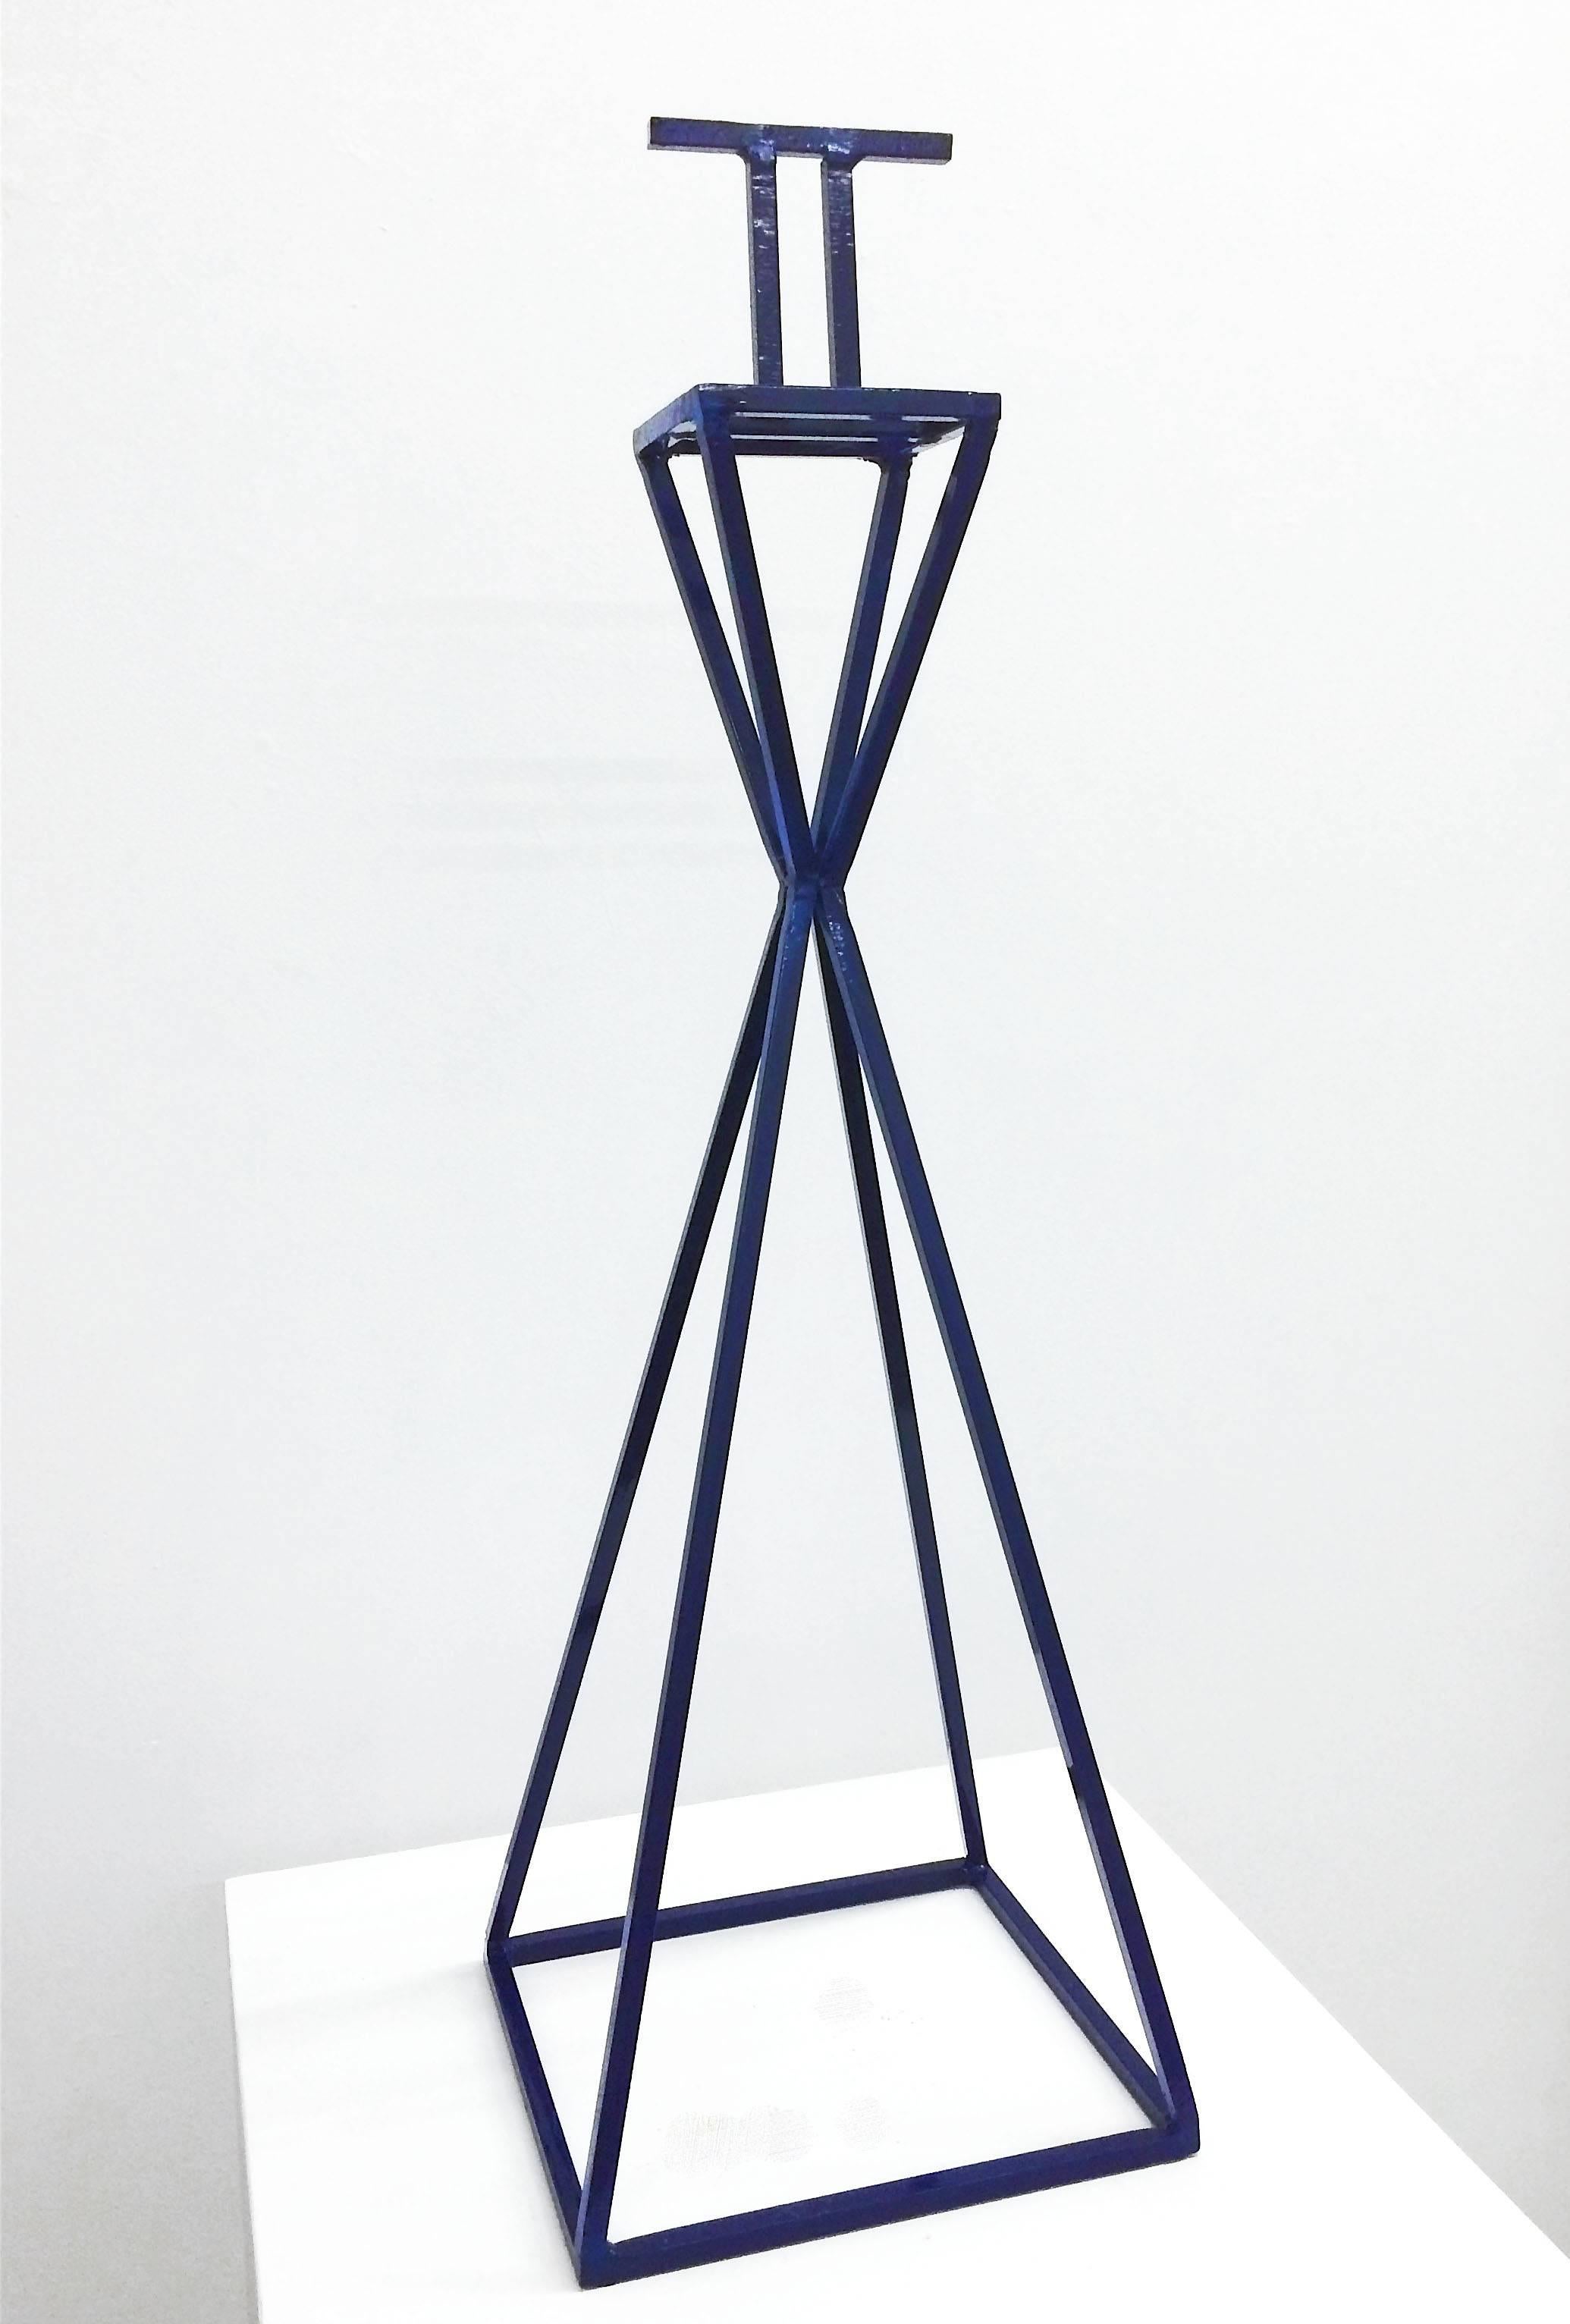 Untitled (Blue) - Sculpture by Kyle Breitenbach